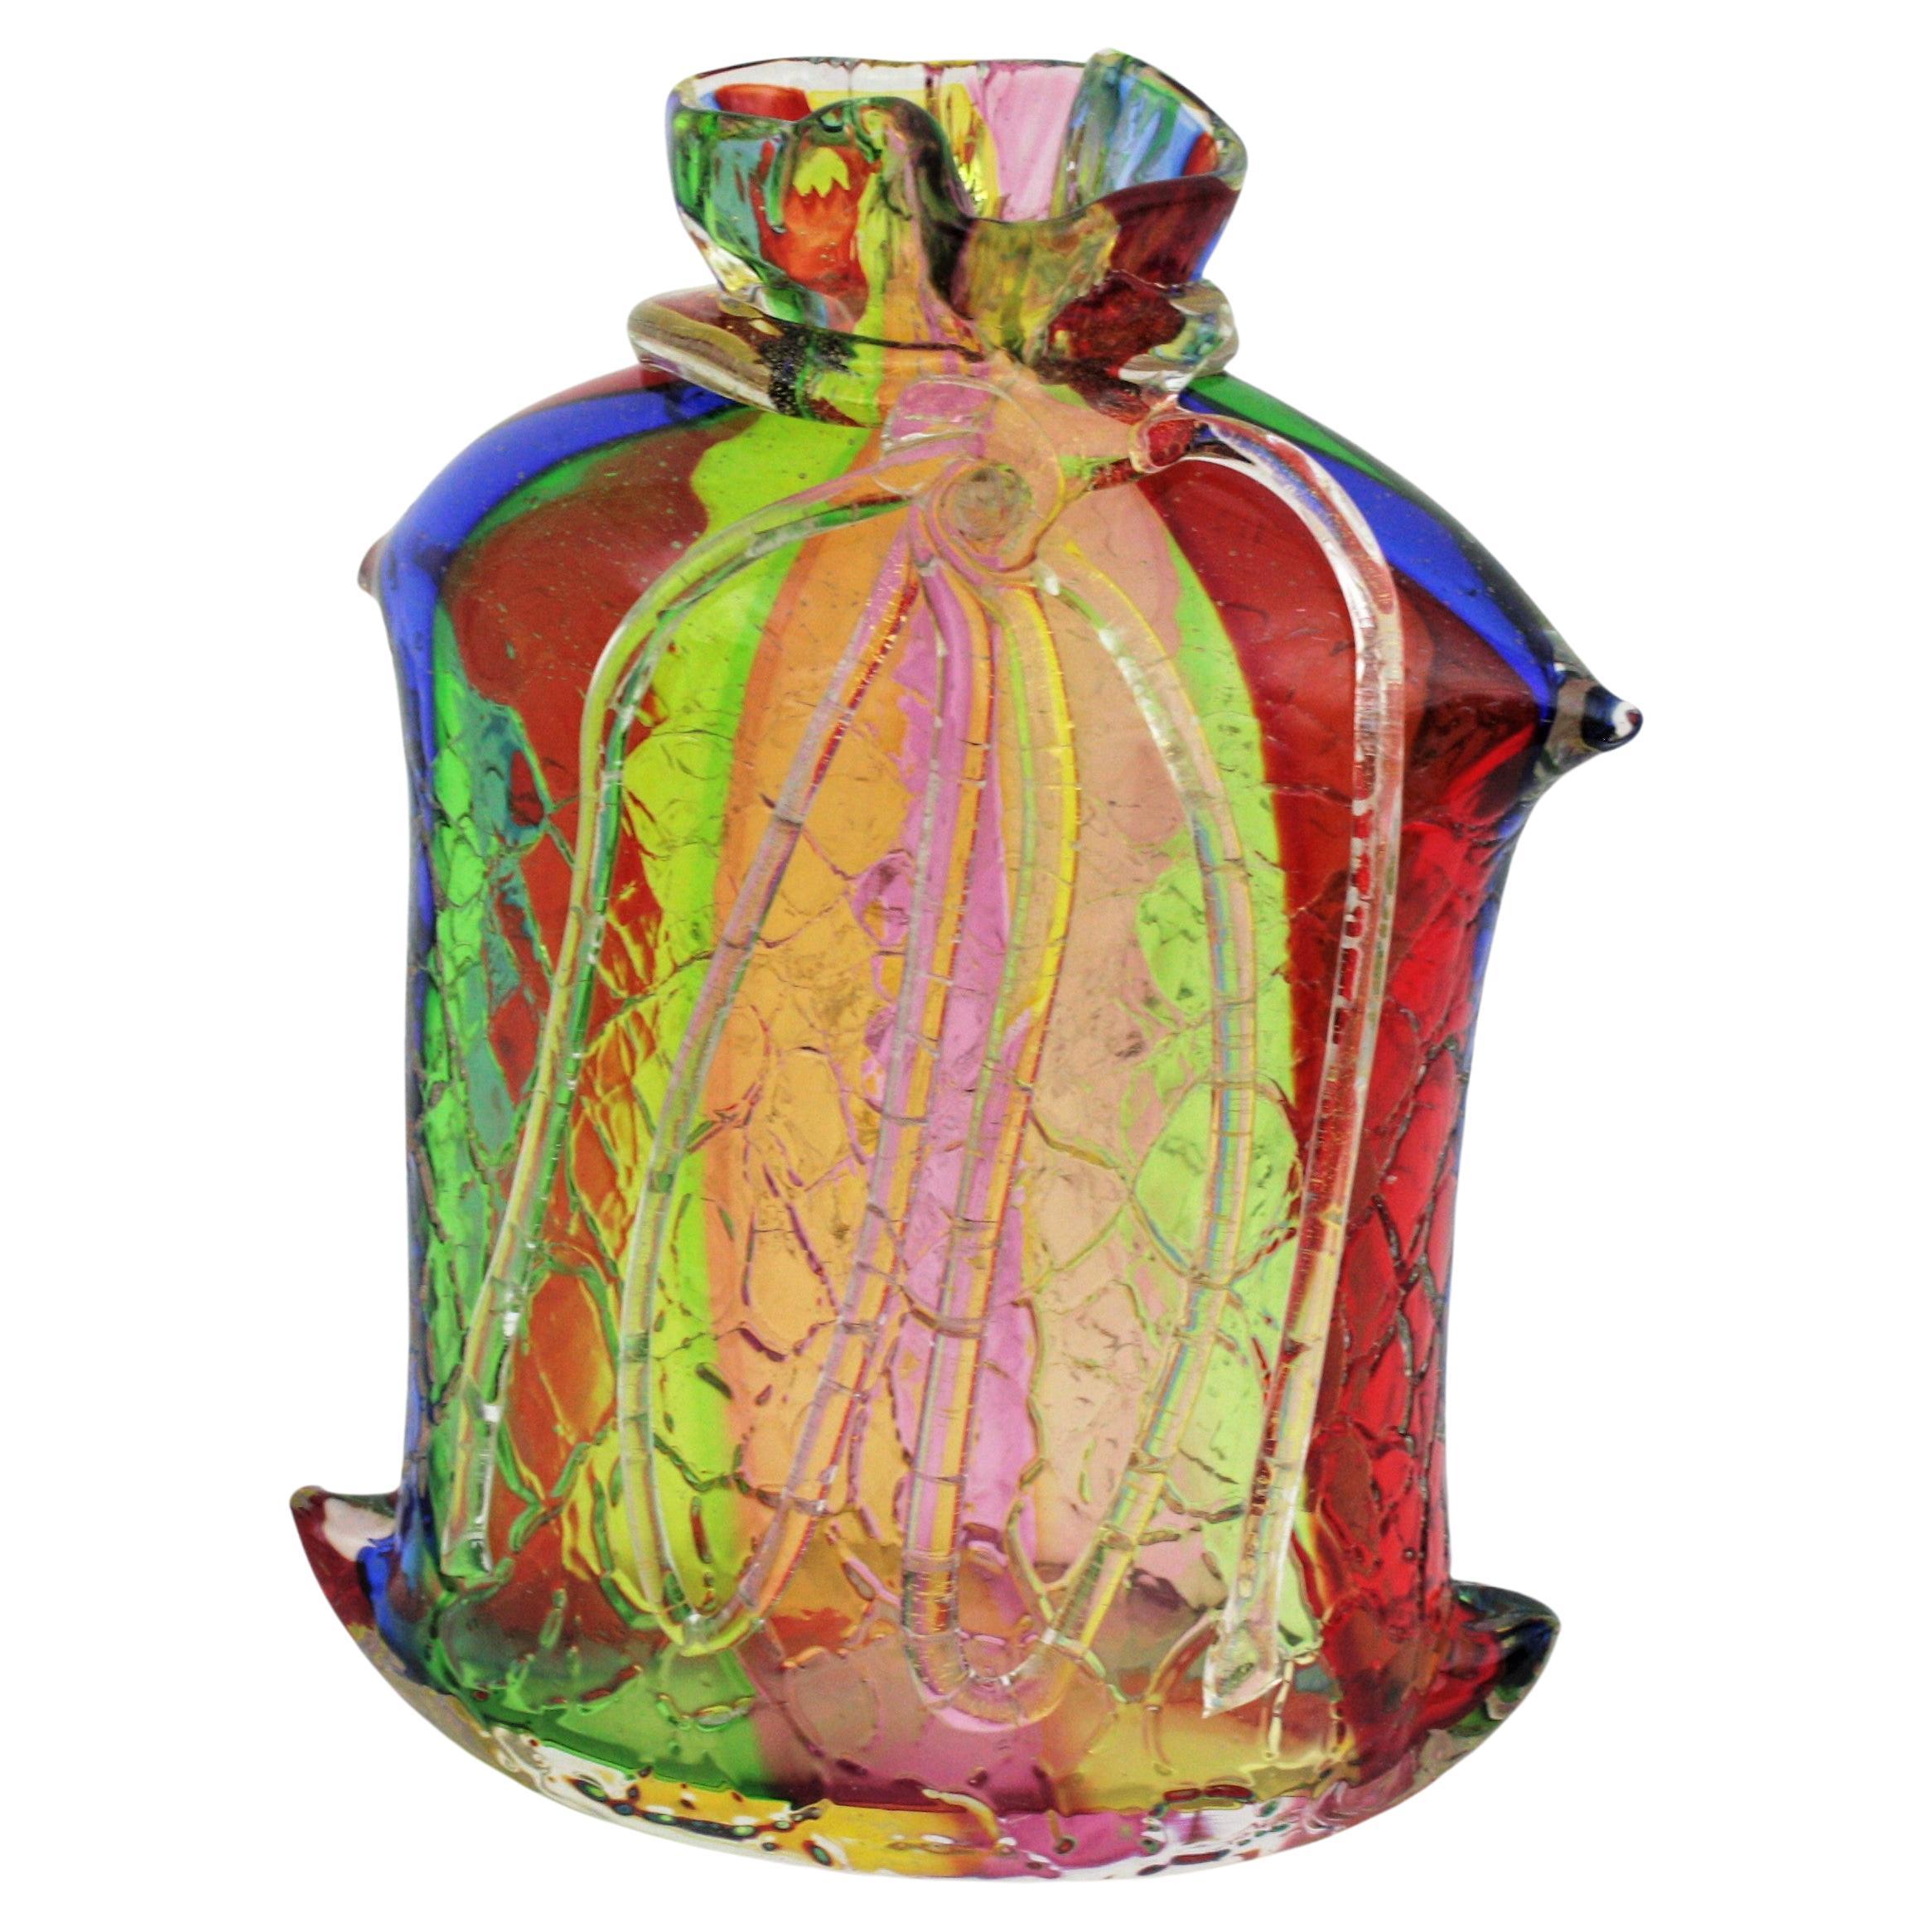 Einzigartige, mundgeblasene, mehrfarbige, regenbogenfarbige, große Vase mit Seildetail. Zuschreibung an Fratelli Toso, Italien, 1950er Jahre.
Diese atemberaubende große gebundene Seil Sack geformt Kunst Glasvase ist aus mehrfarbigen dicken Streifen